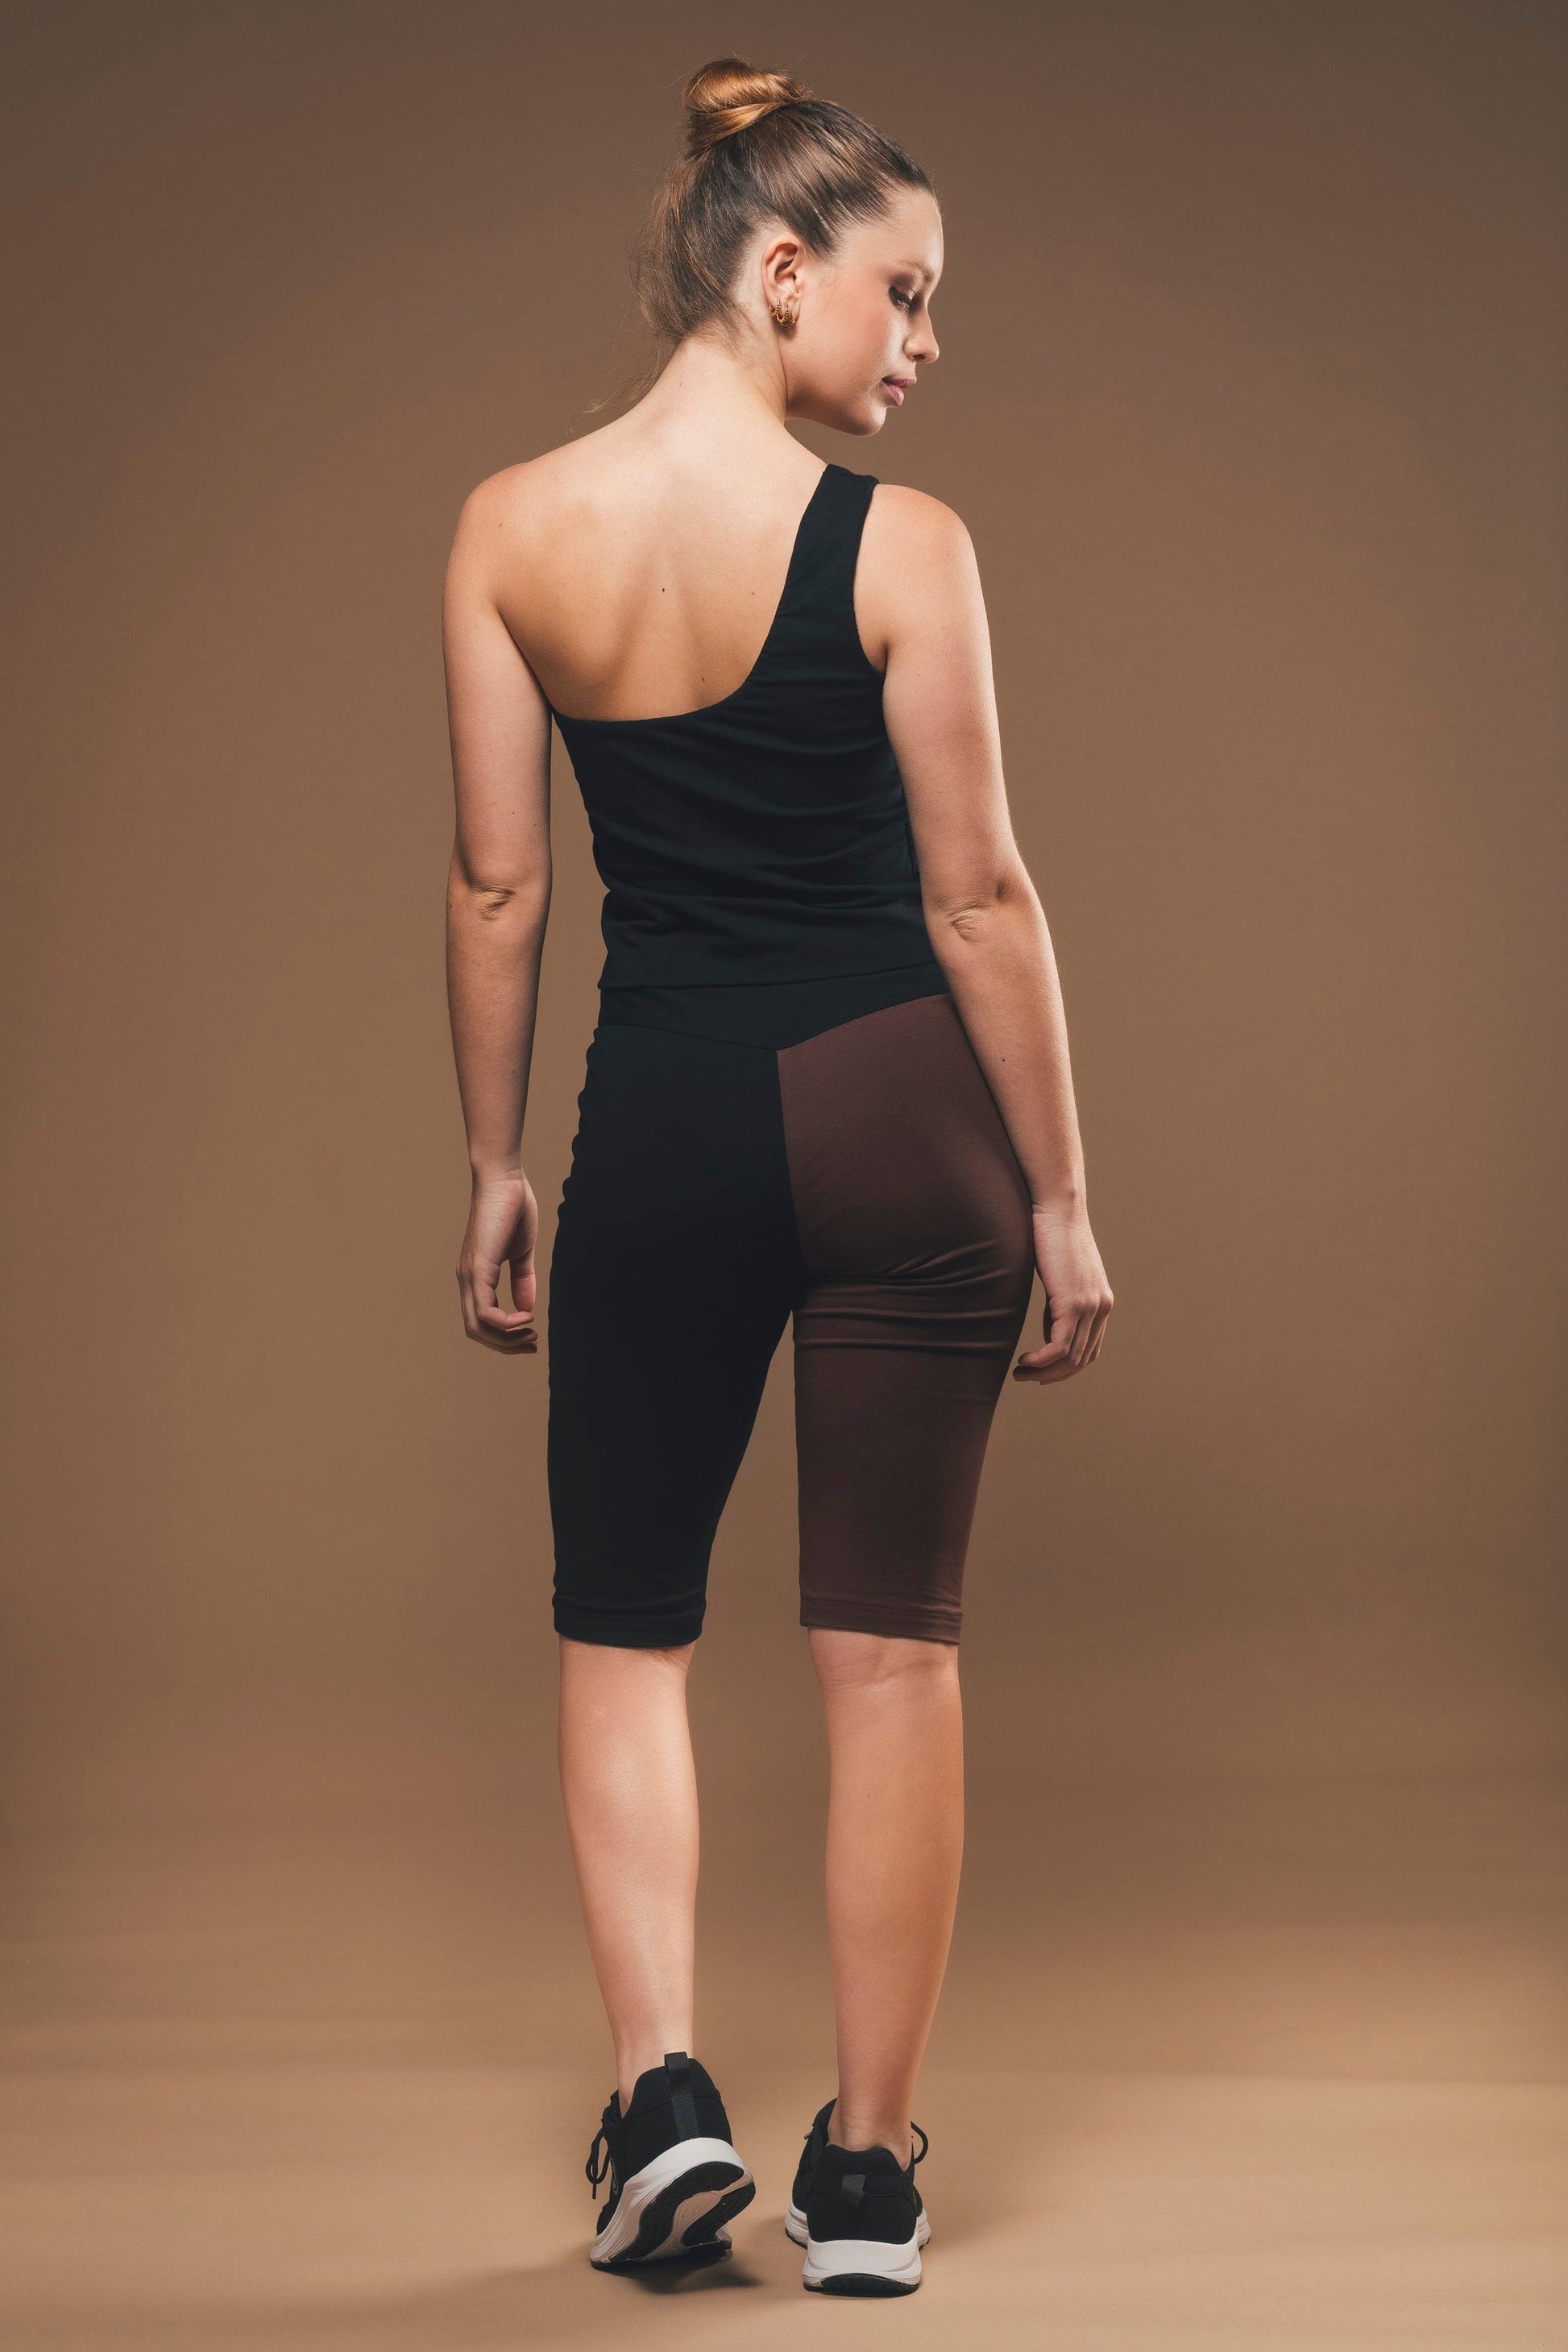 Imagen de unos pantalones de ciclista de comercio justo negros y marrones fabricados por Organique.